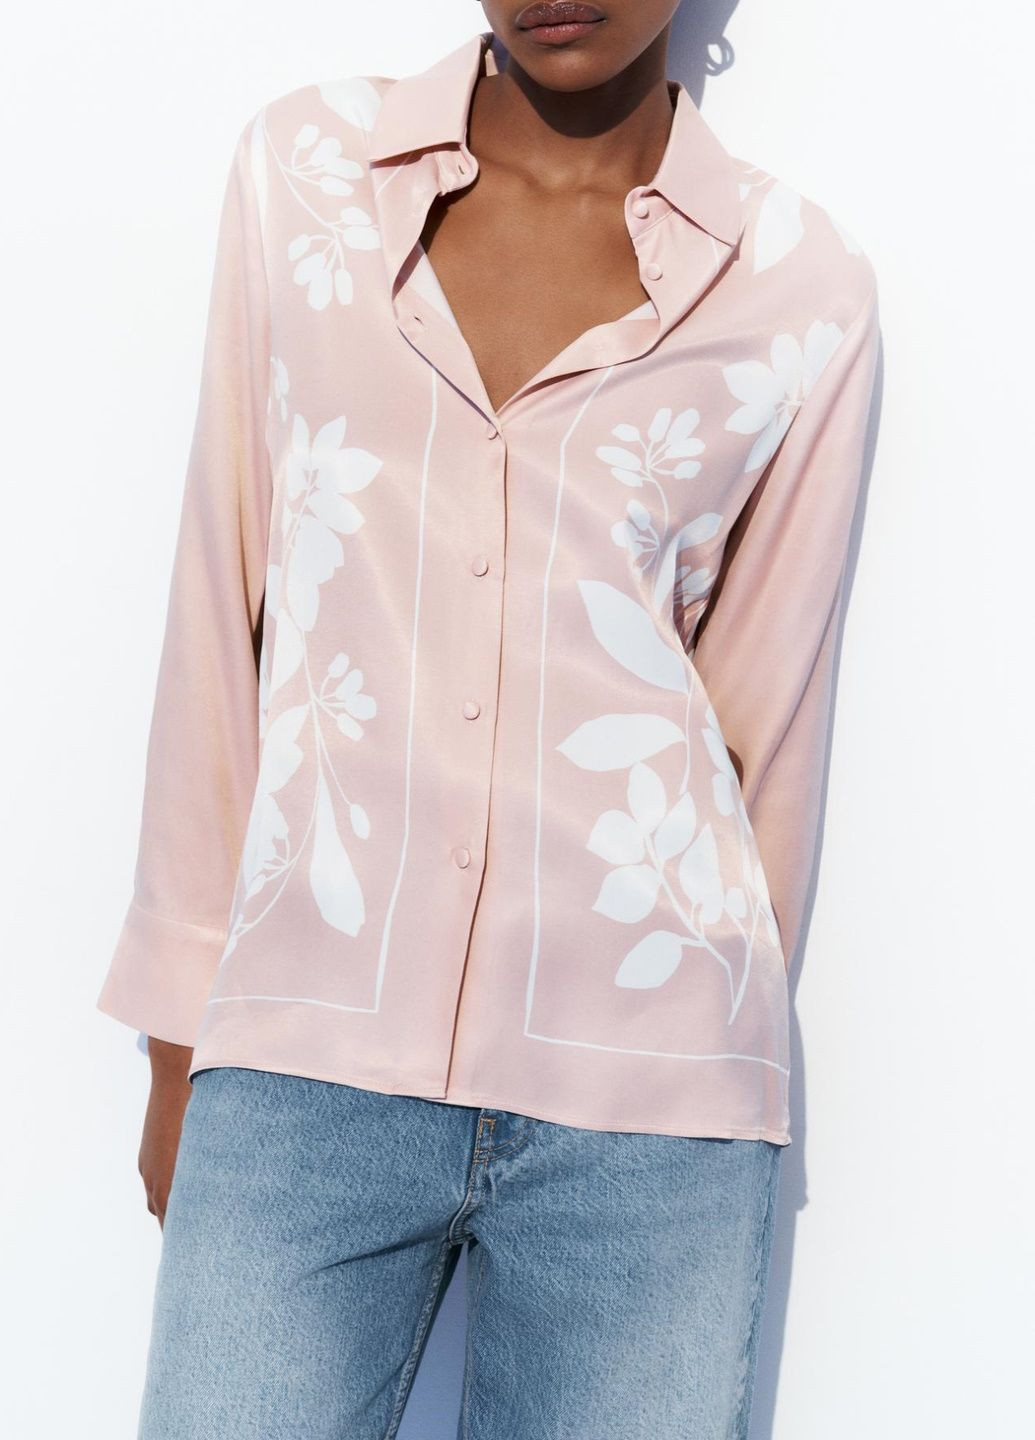 Розовая праздничный рубашка с цветами Zara